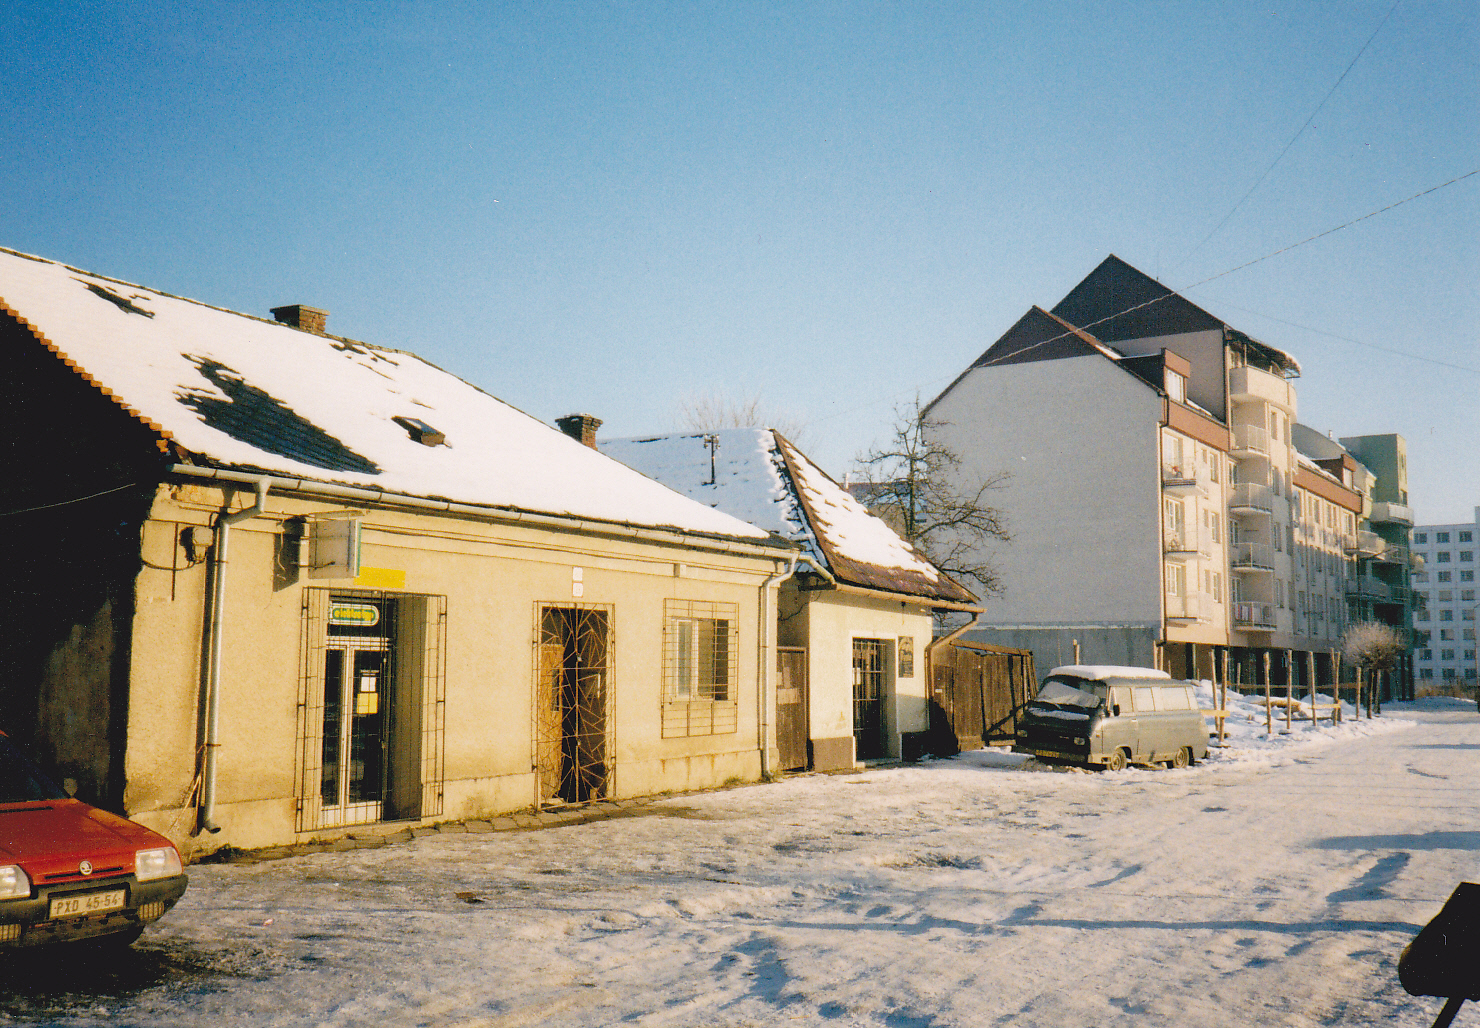 Posledné domy na Moravskej ulici v Púchove v r. 2002, ktoré počas rekonštrukcie ulice nahradili polyfunkčné bytovky